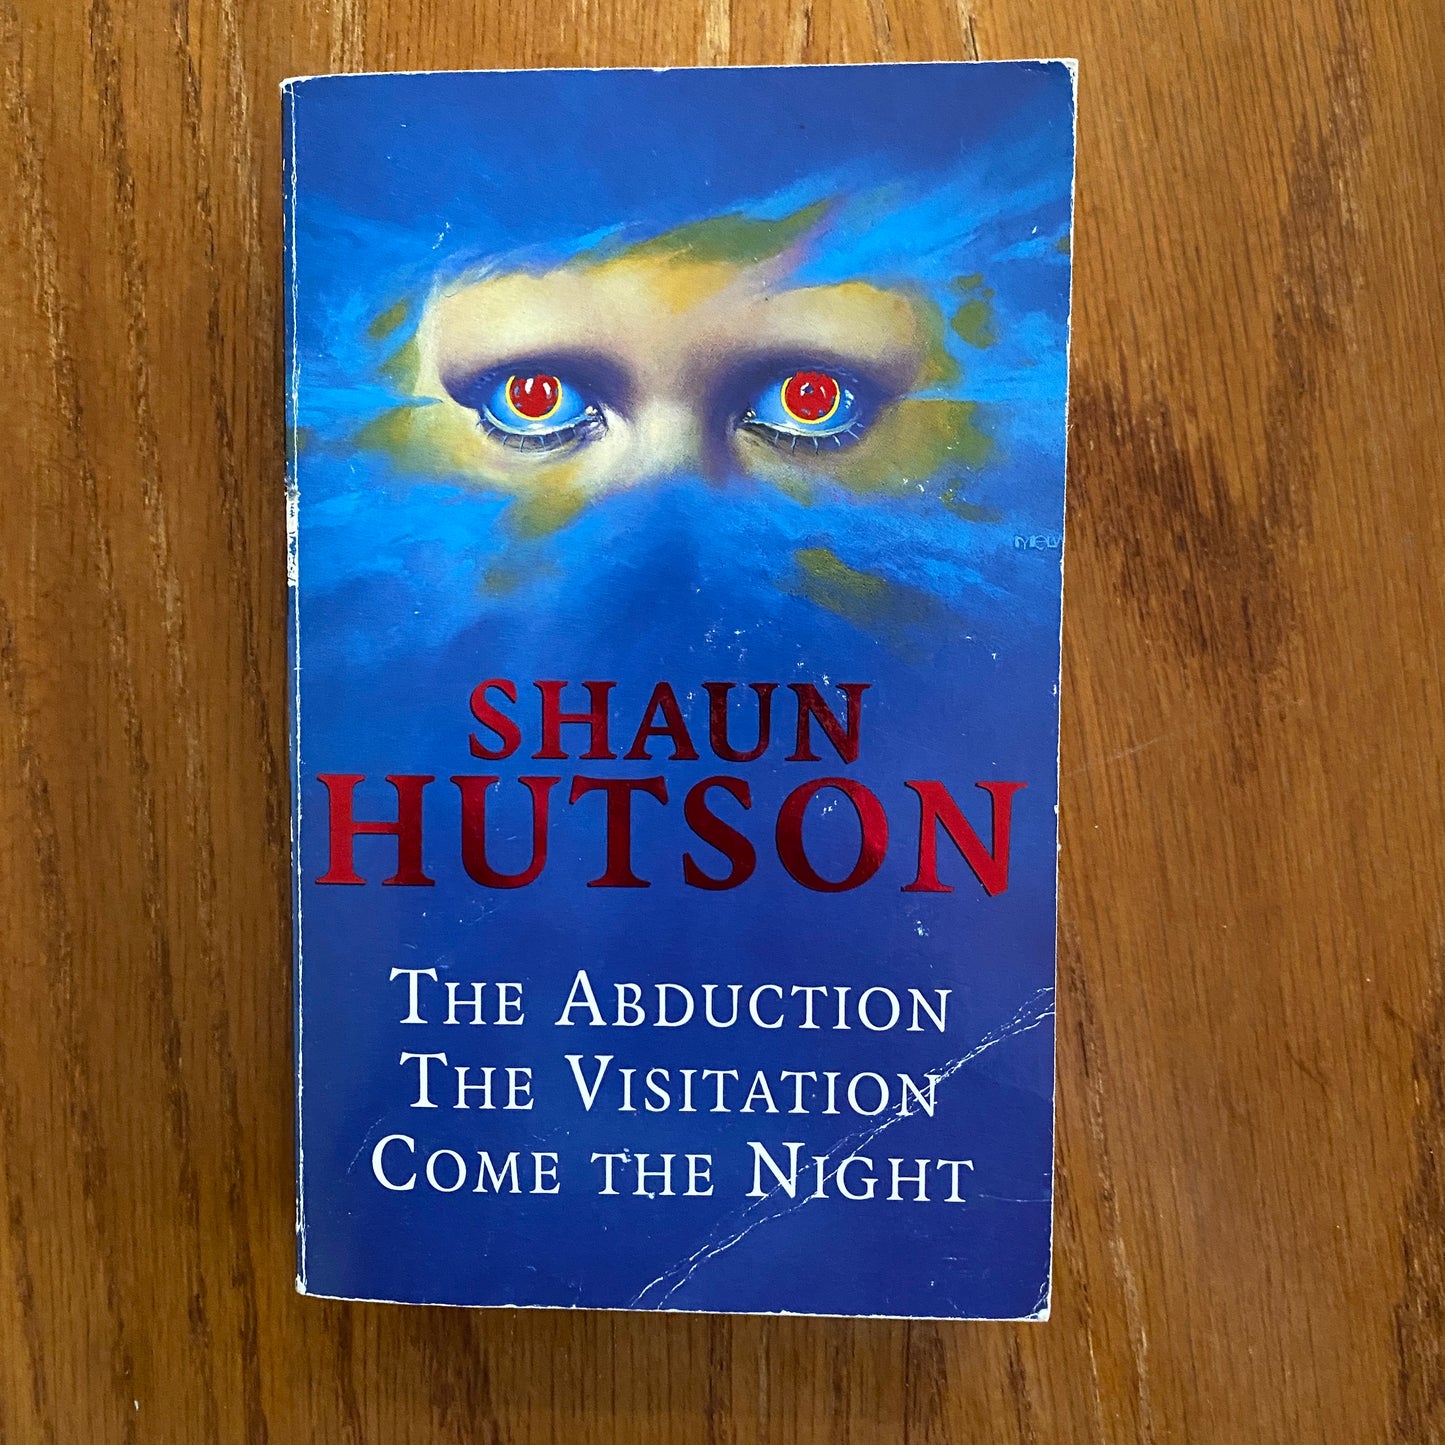 Shaun Hutson - The Abduction, The Visitation, Come The Night